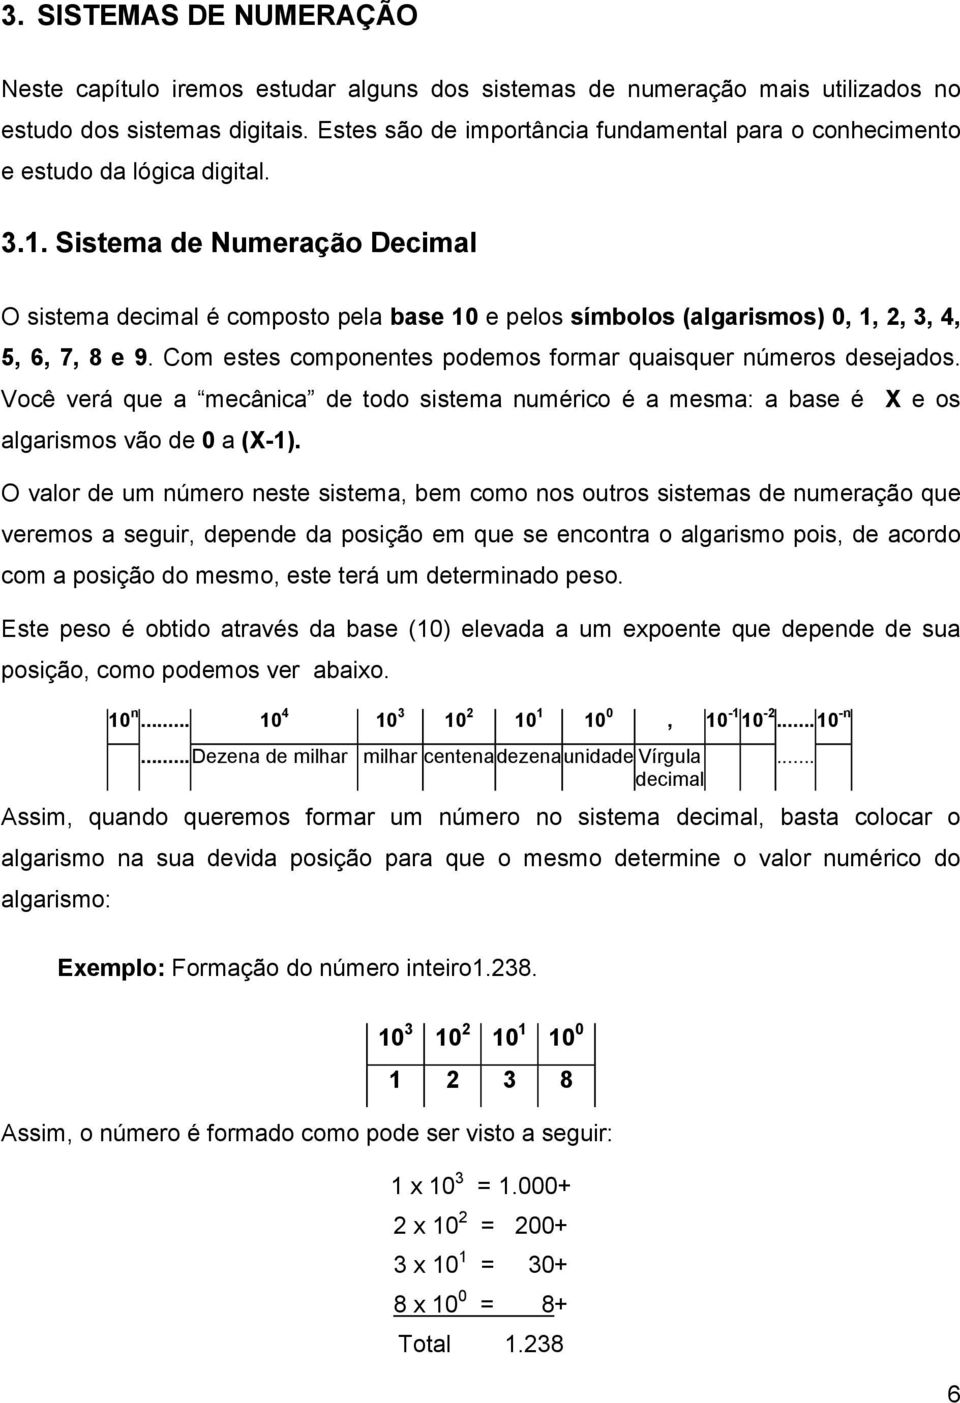 Sistema de Numeração Decimal O sistema decimal é composto pela base 10 e pelos símbolos (algarismos) 0, 1, 2, 3, 4, 5, 6, 7, 8 e 9. Com estes componentes podemos formar quaisquer números desejados.